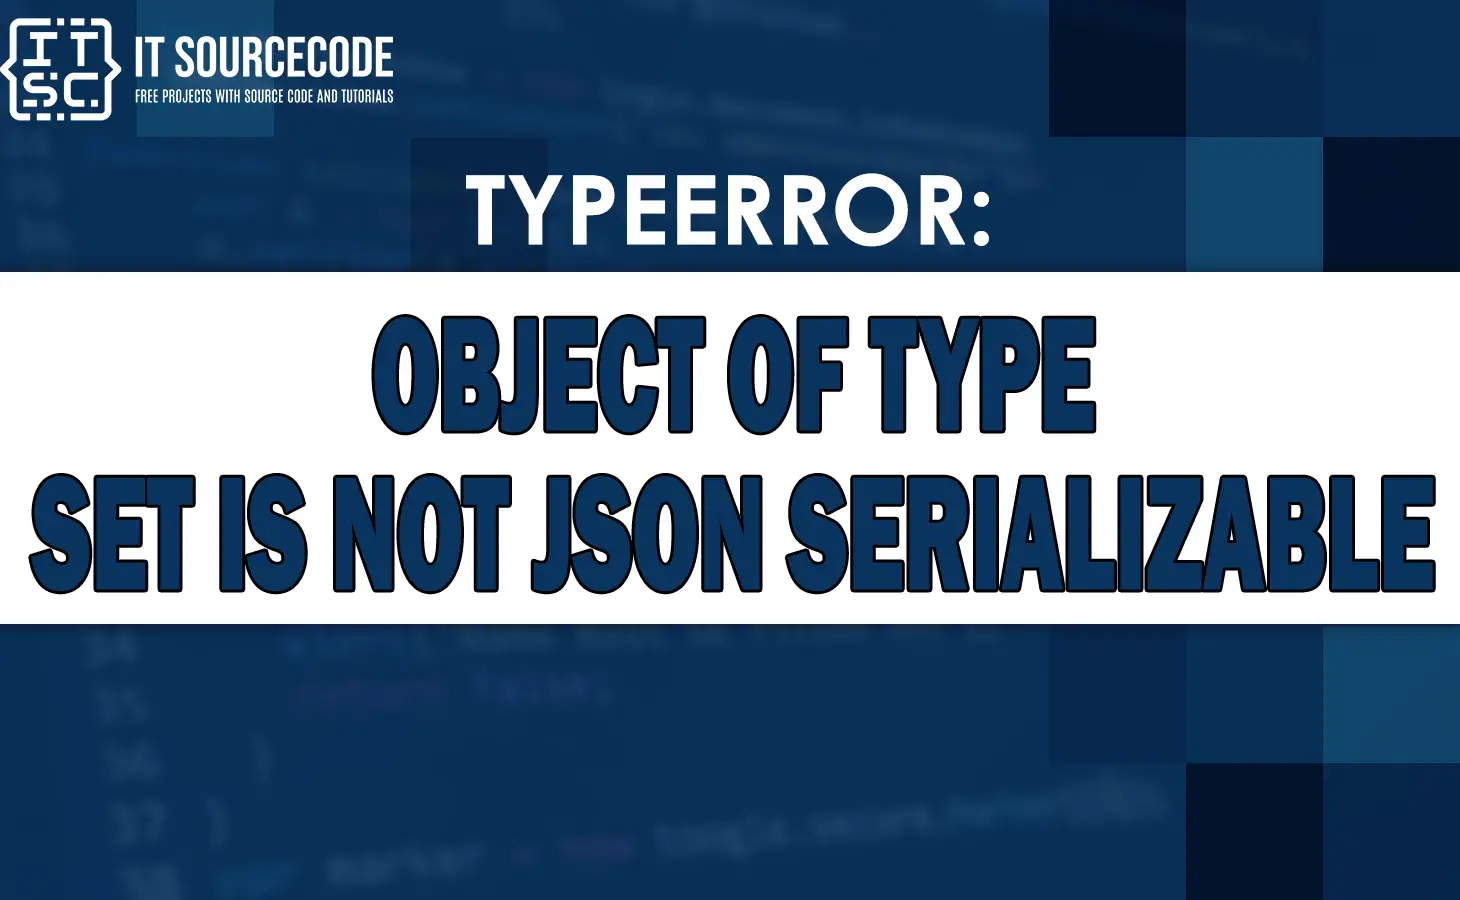 typeerror object of type set is not json serializable